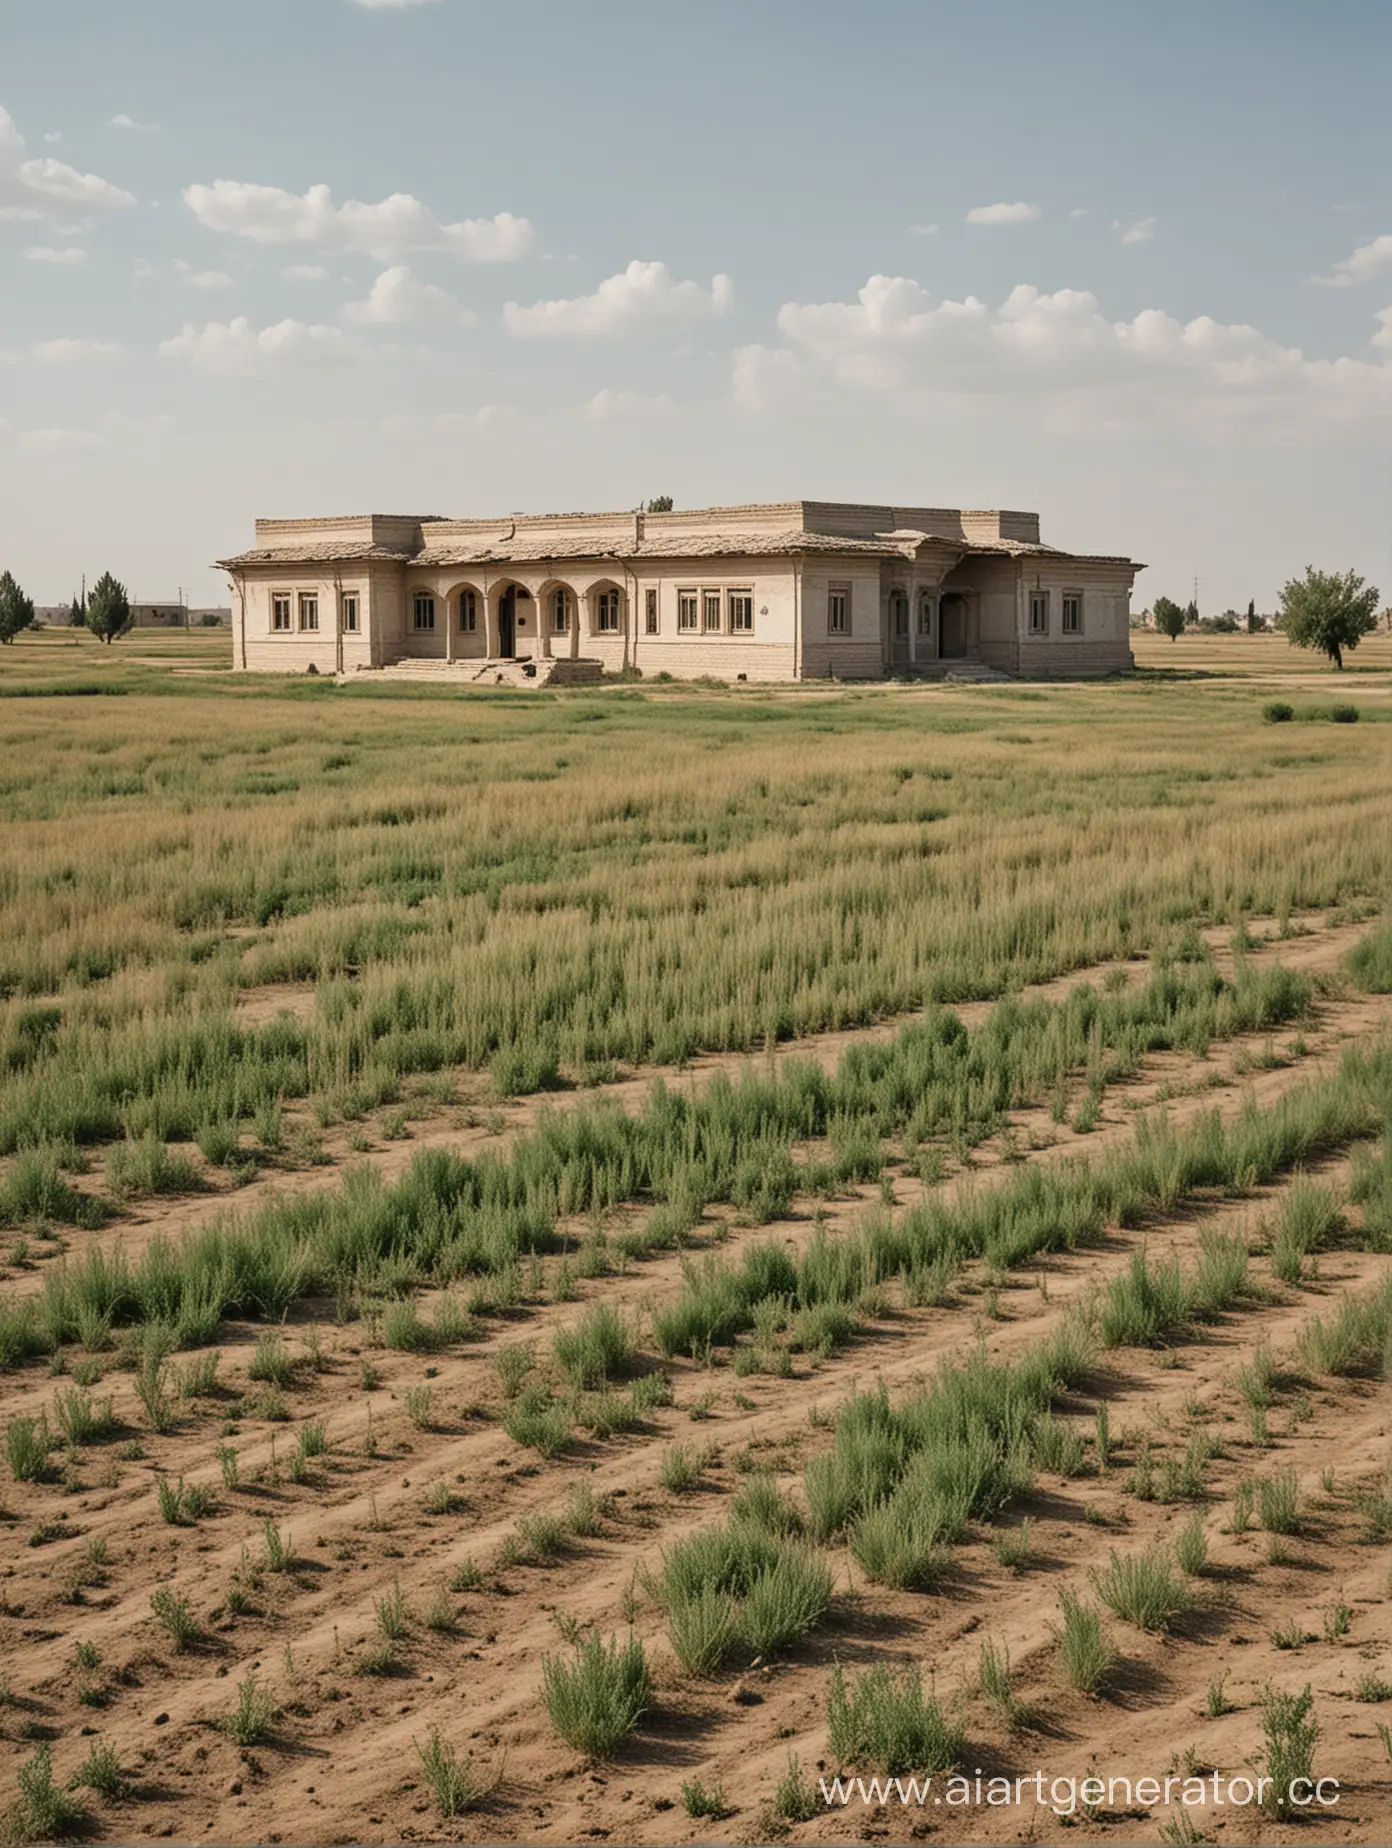 дом богатых узбеков в пустынном поле